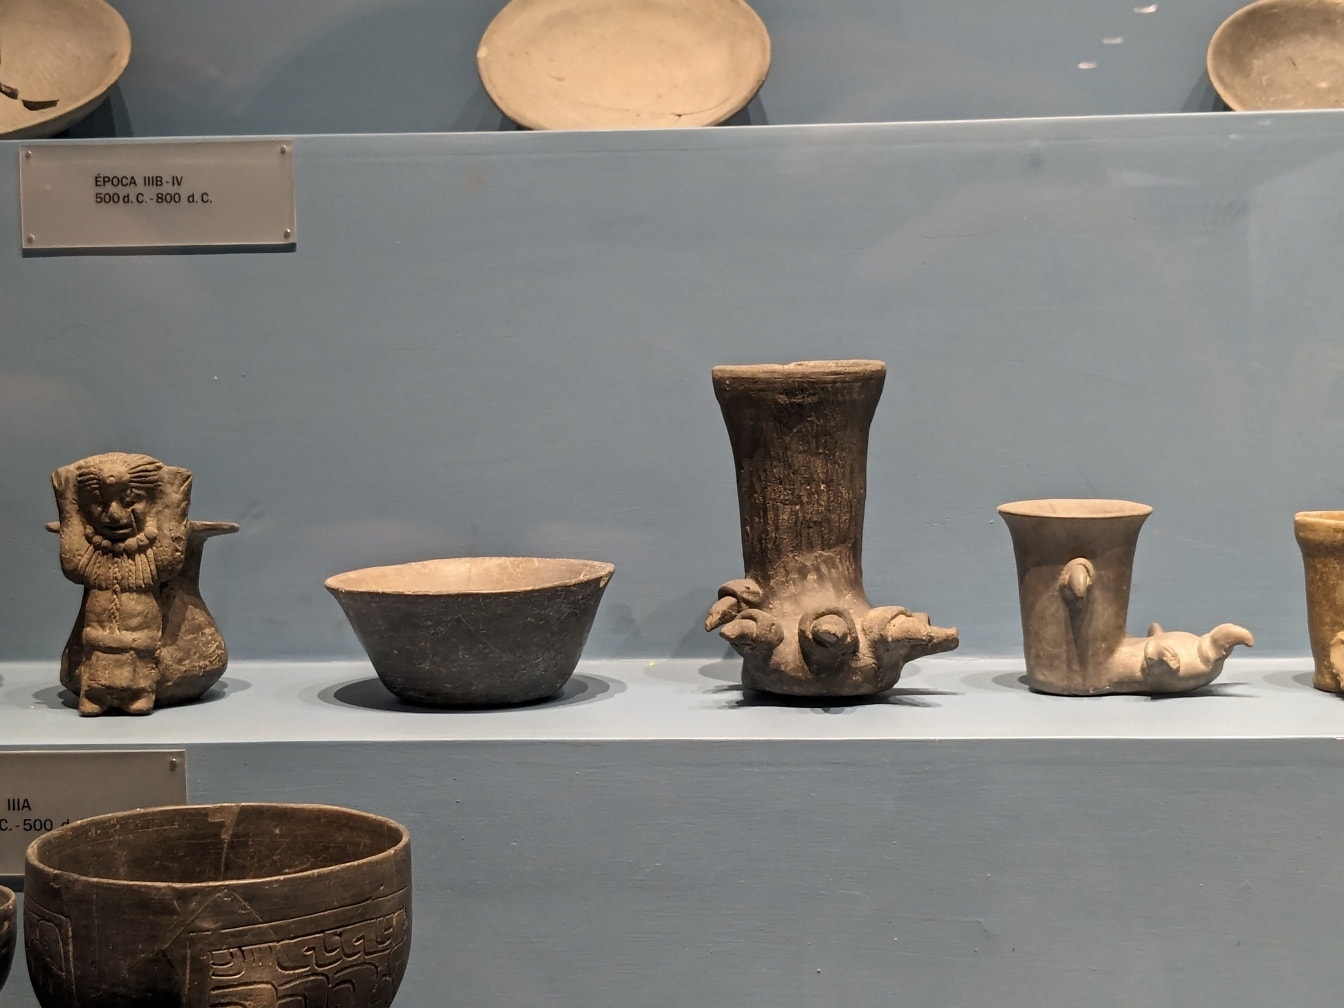 Стародавня мексиканська кераміка на полиці в археологічному музеї в Оксаці